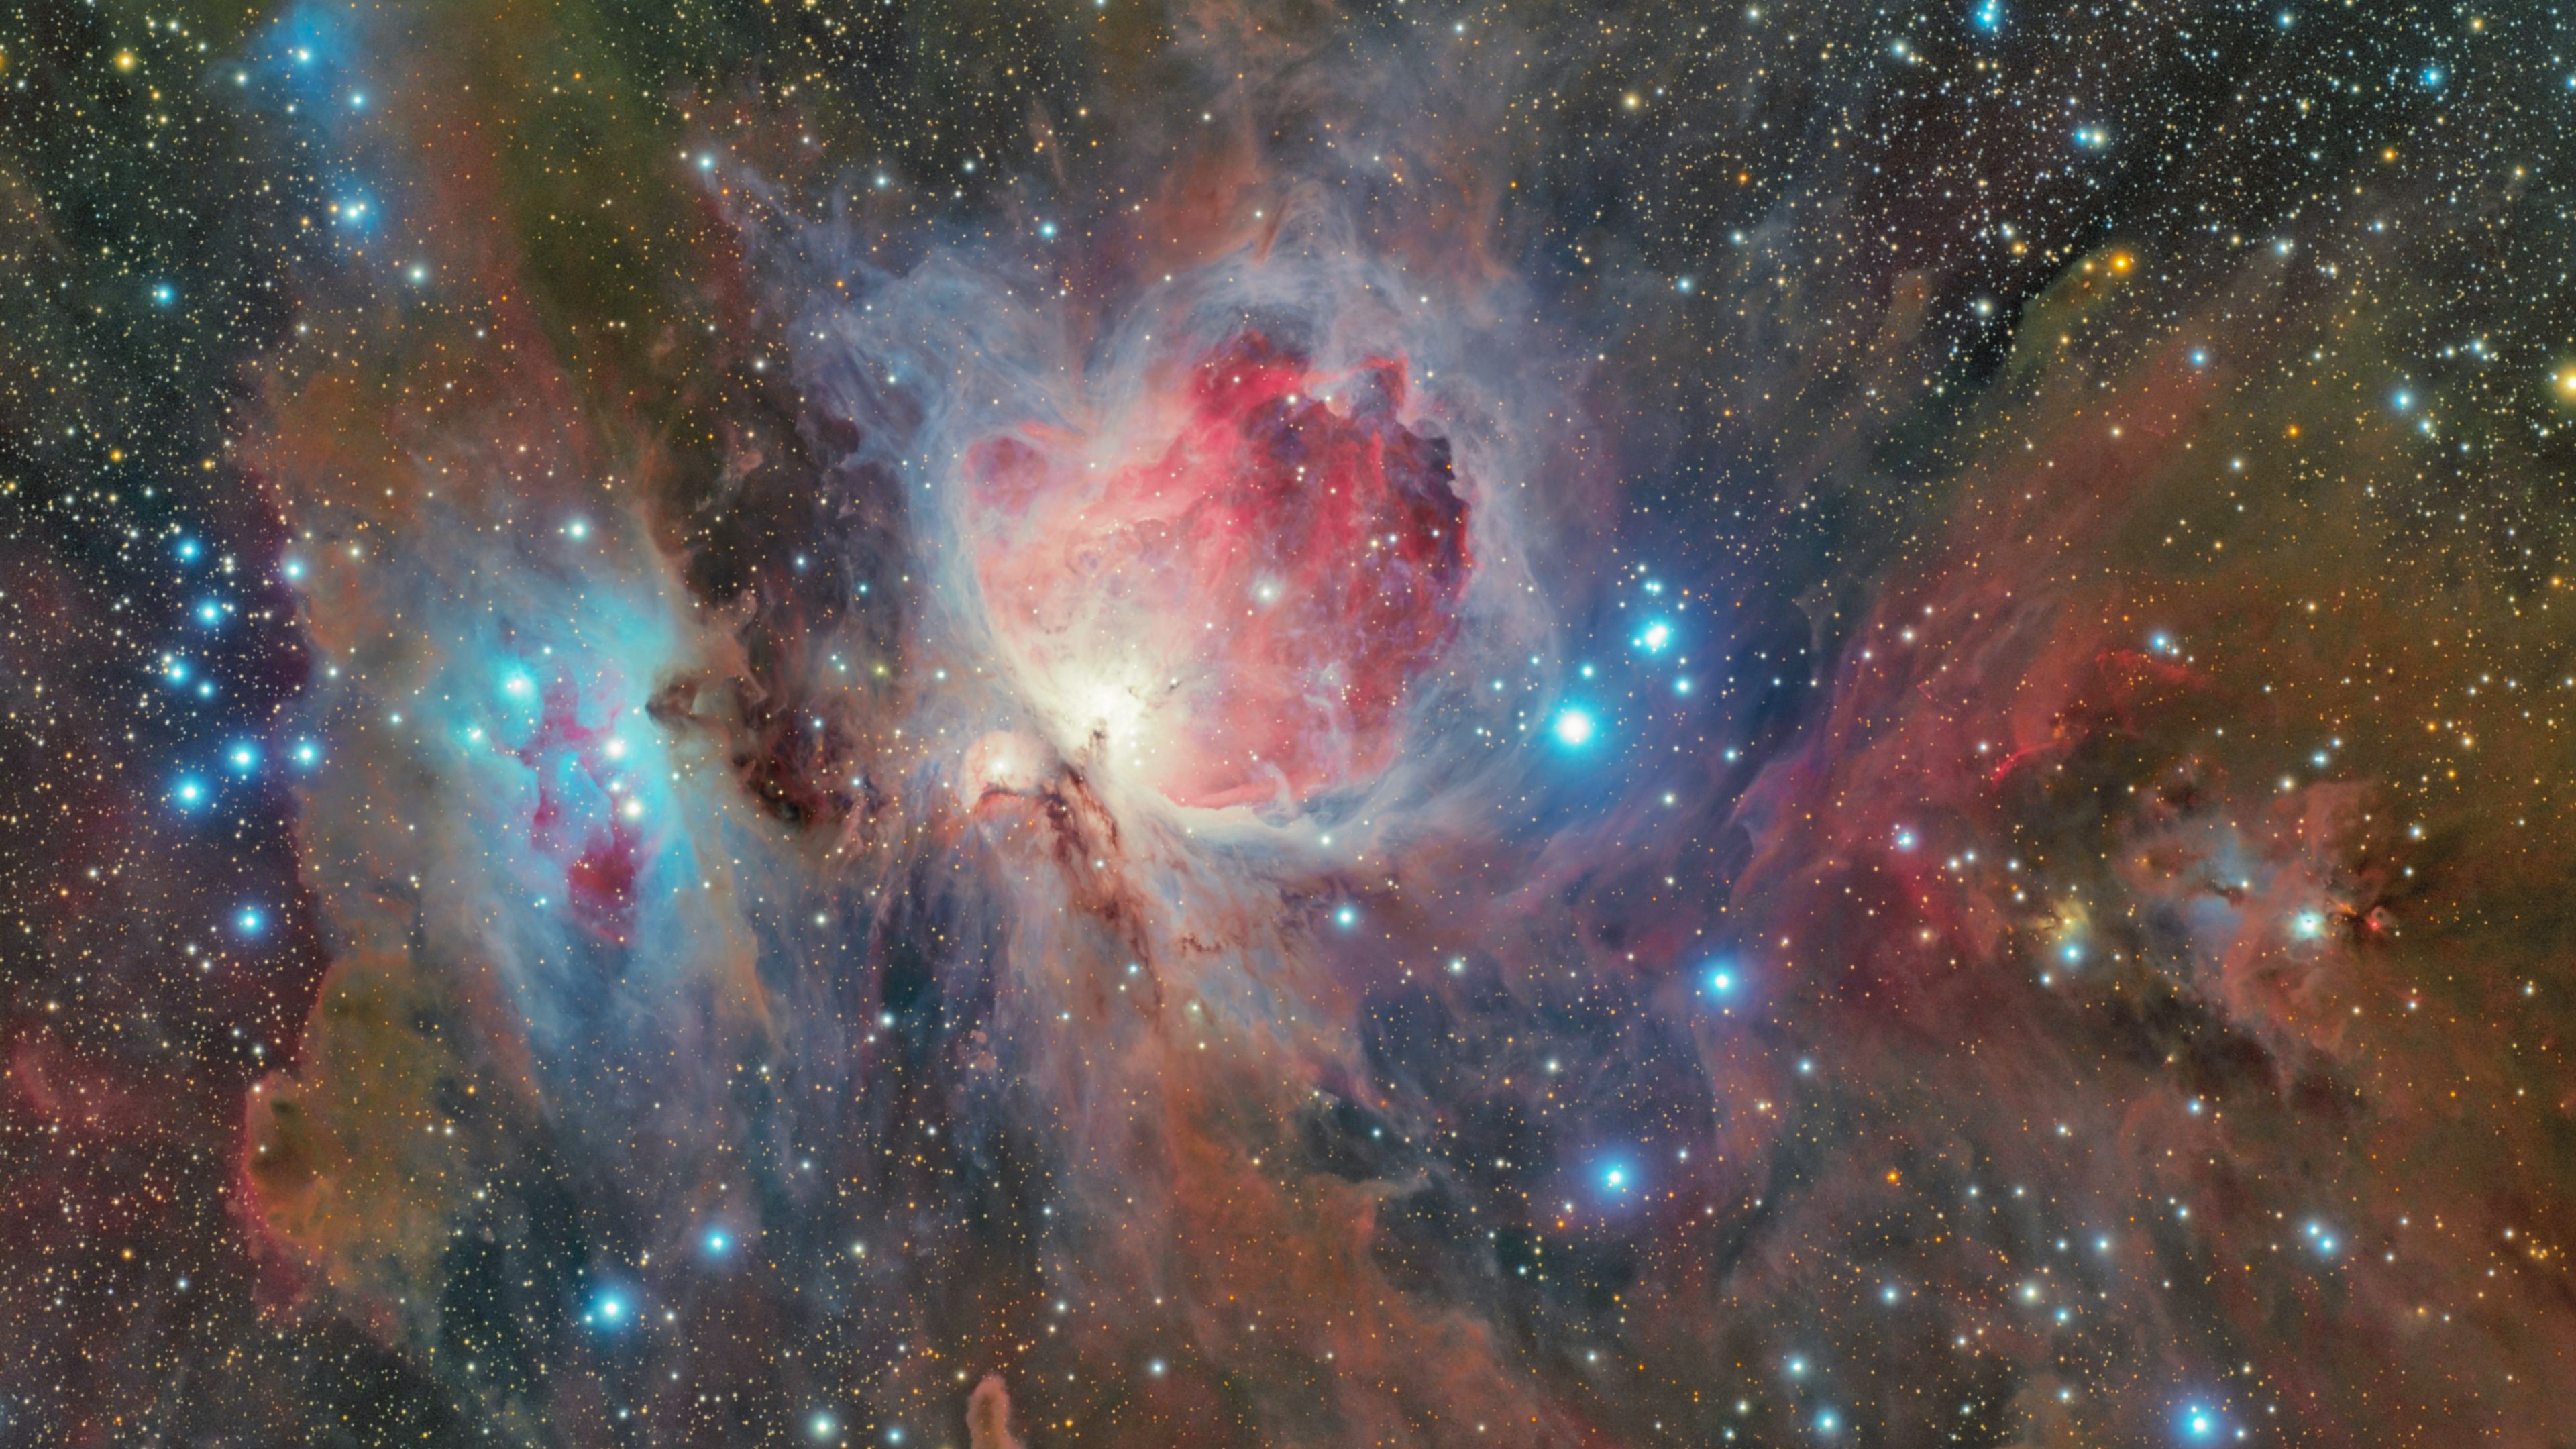 Download wallpaper 3840x2160 orion nebula, nebula, galaxy, stars, space ...